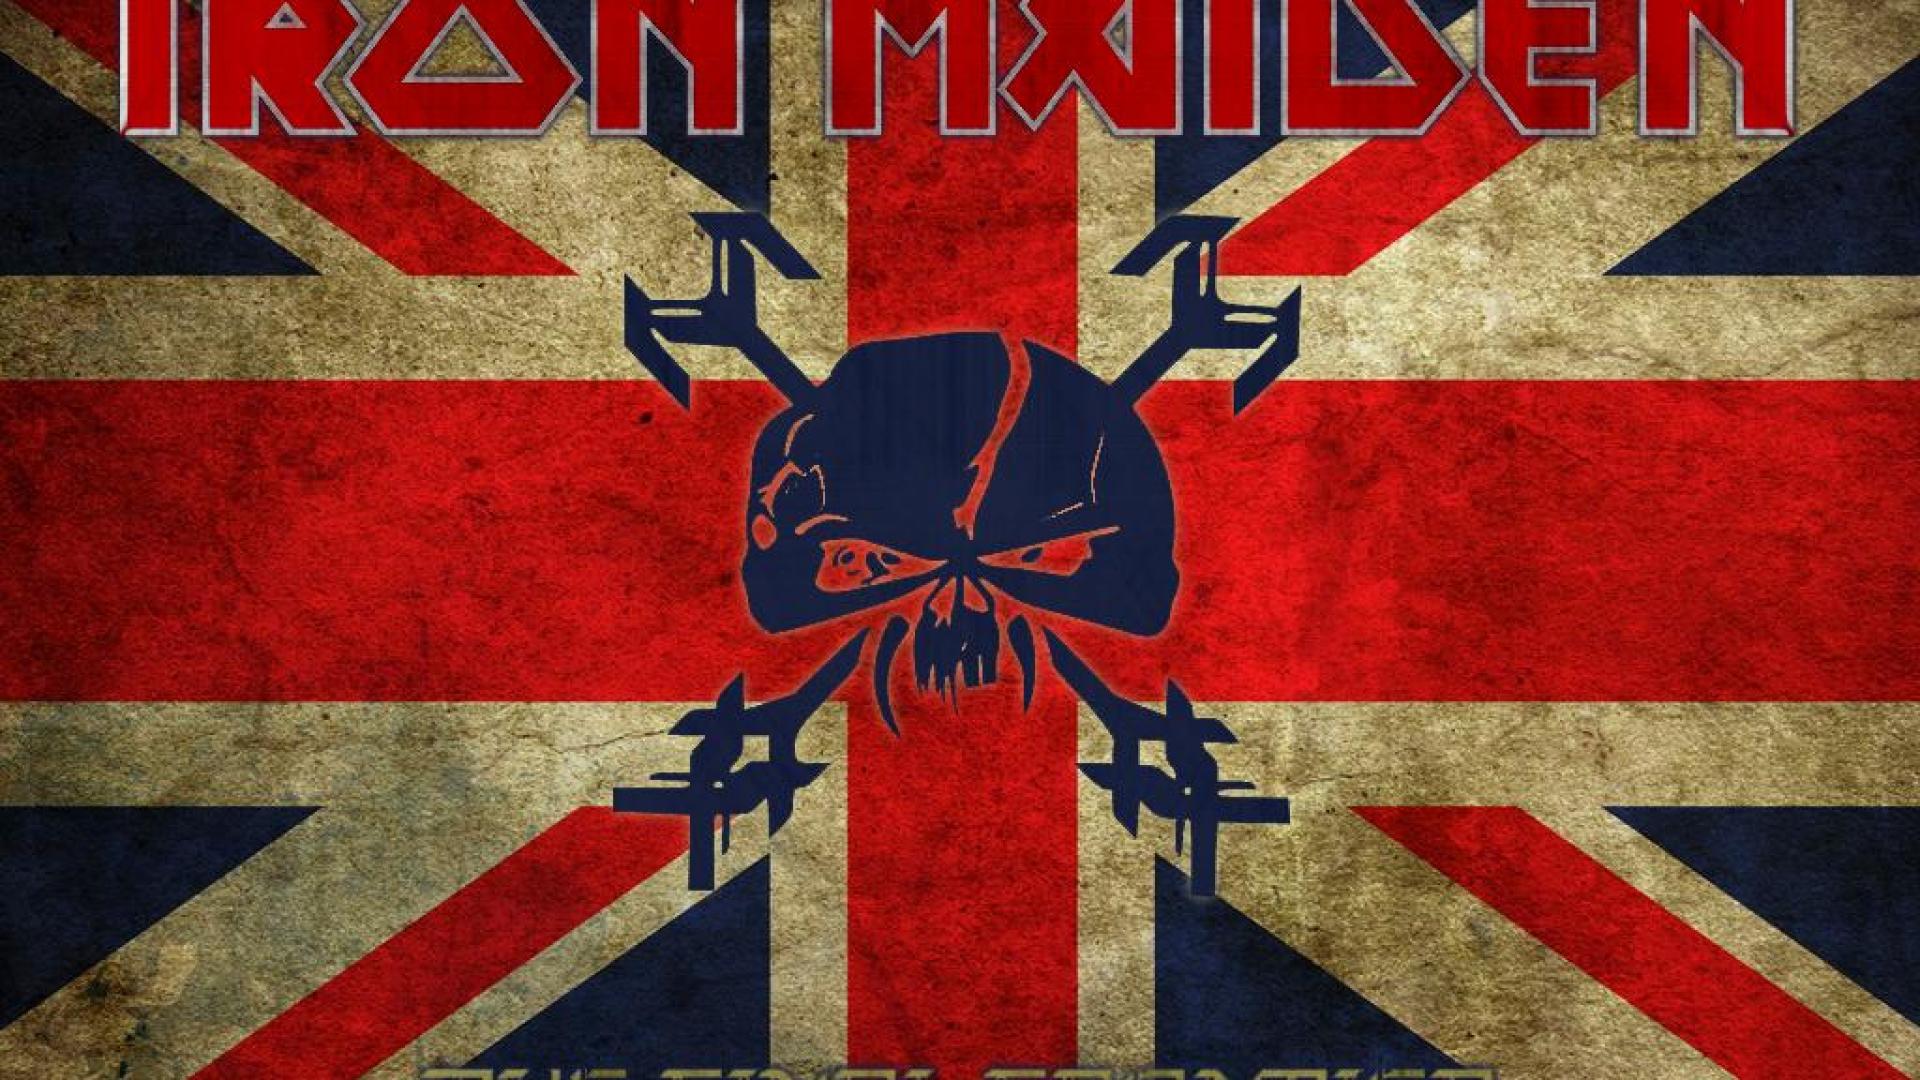 Iron Maiden #22